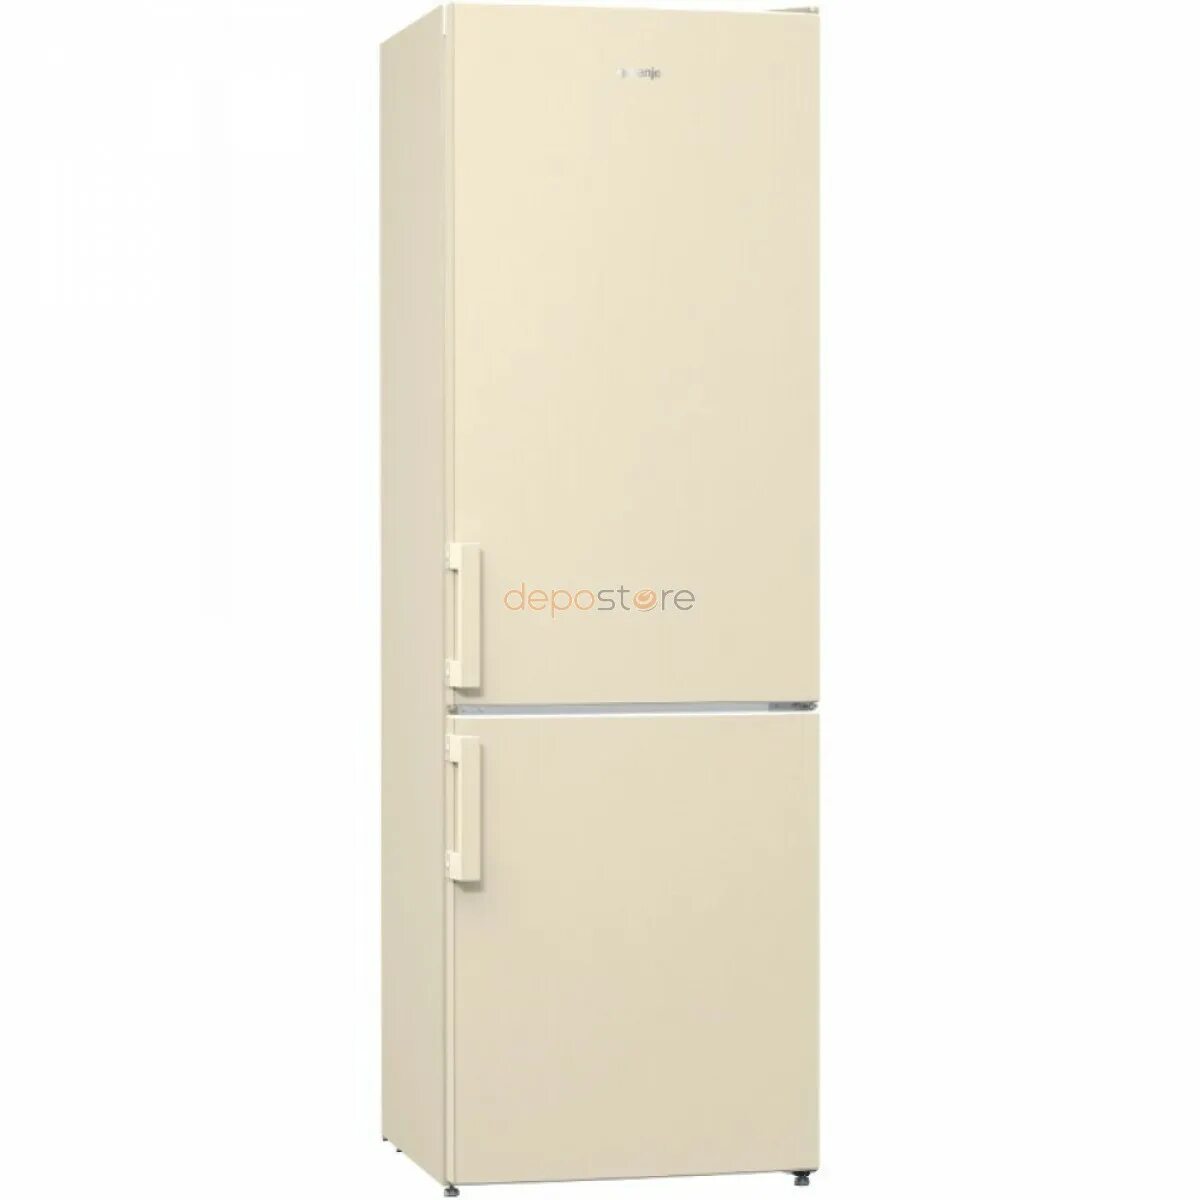 Холодильник Gorenje rk6192. Холодильник Gorenje RK 6192 EC. Холодильник Gorenje 185 см бежевый. Атлант бежевый двухкамерный холодильник цвет бежевый. Купить бежевый двухкамерный холодильник